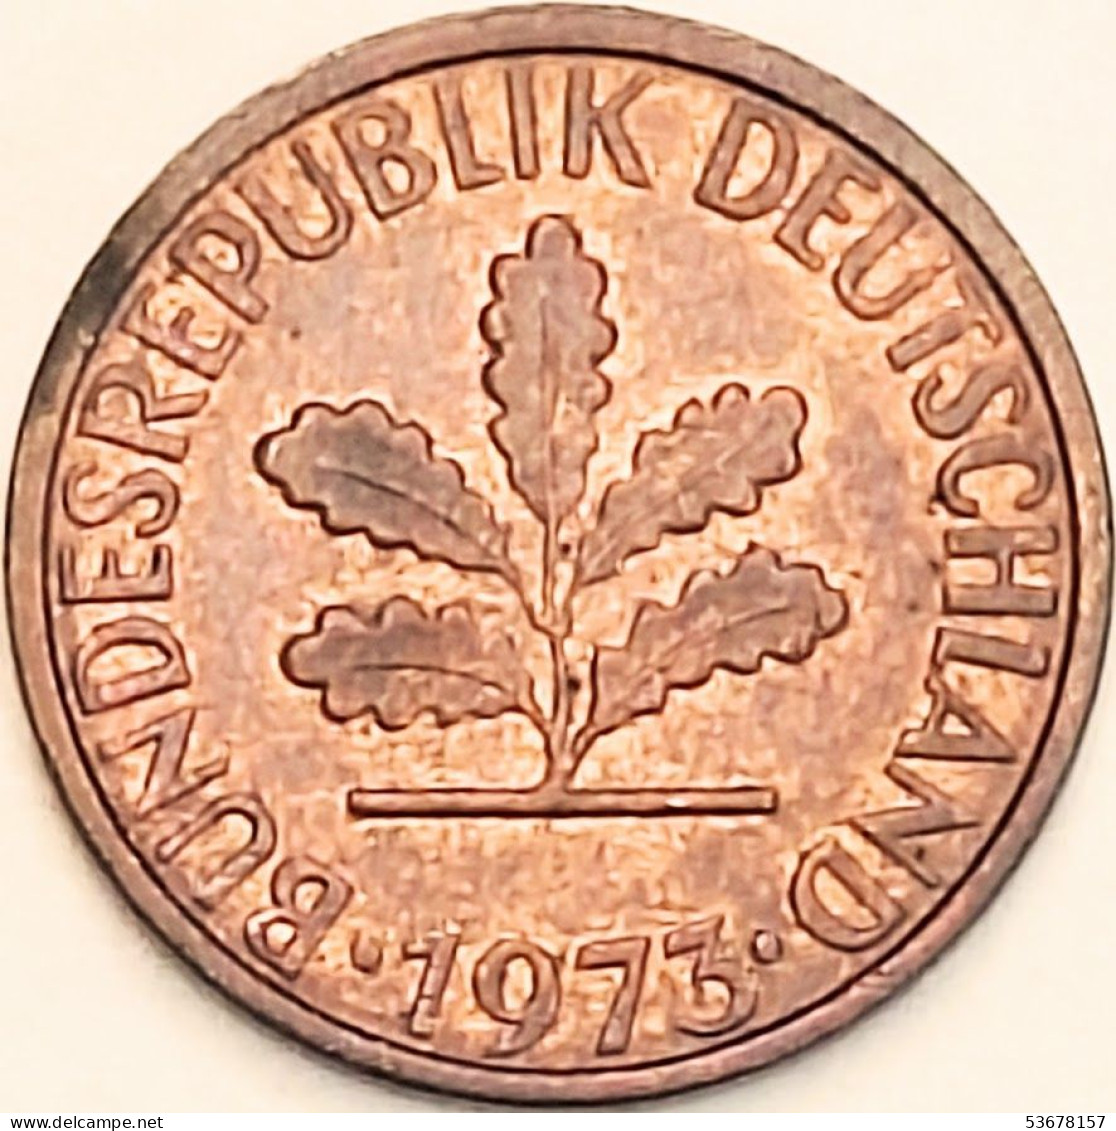 Germany Federal Republic - Pfennig 1973 F, KM# 105 (#4462) - 1 Pfennig